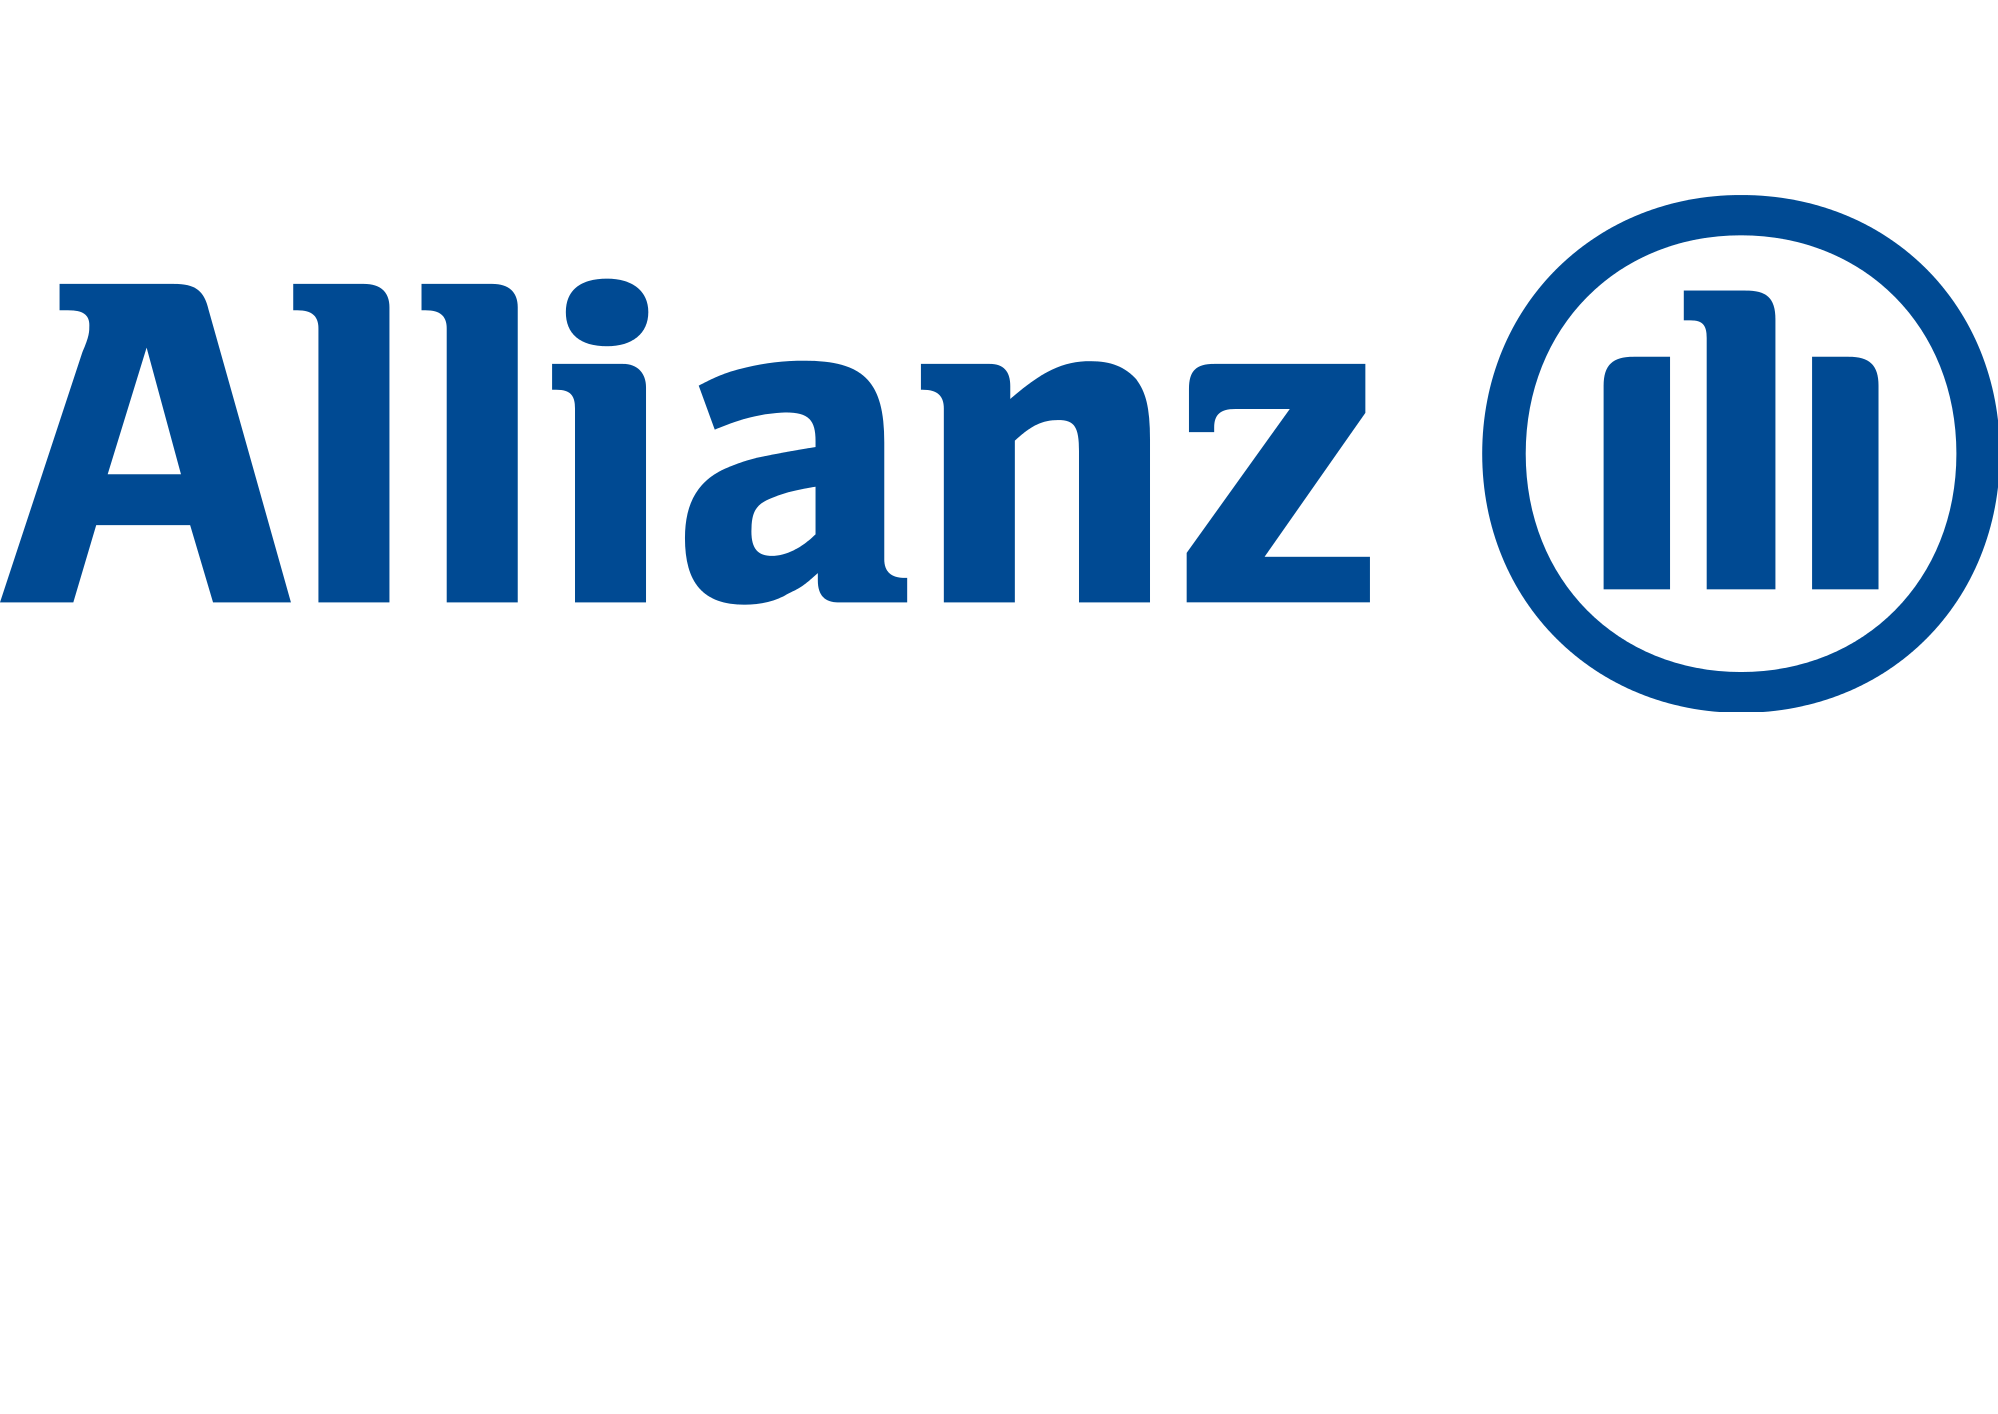 Allianz-Logo